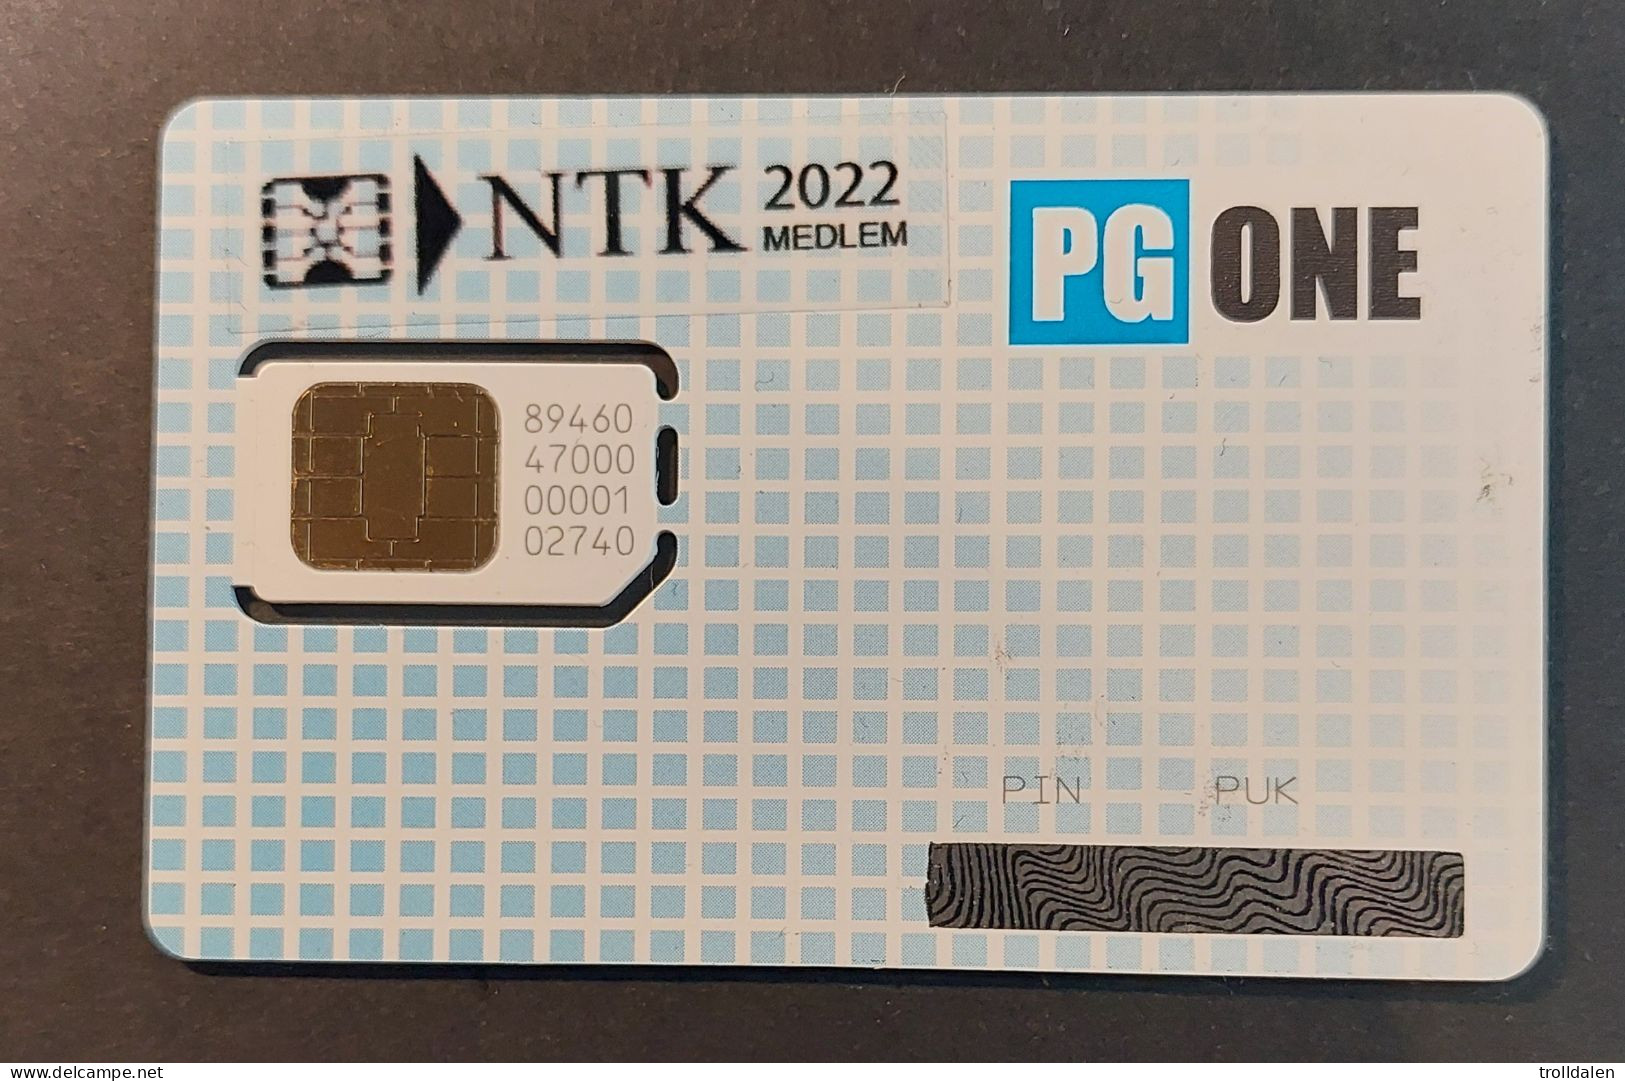 NTK Memberscard 2022 - Norway